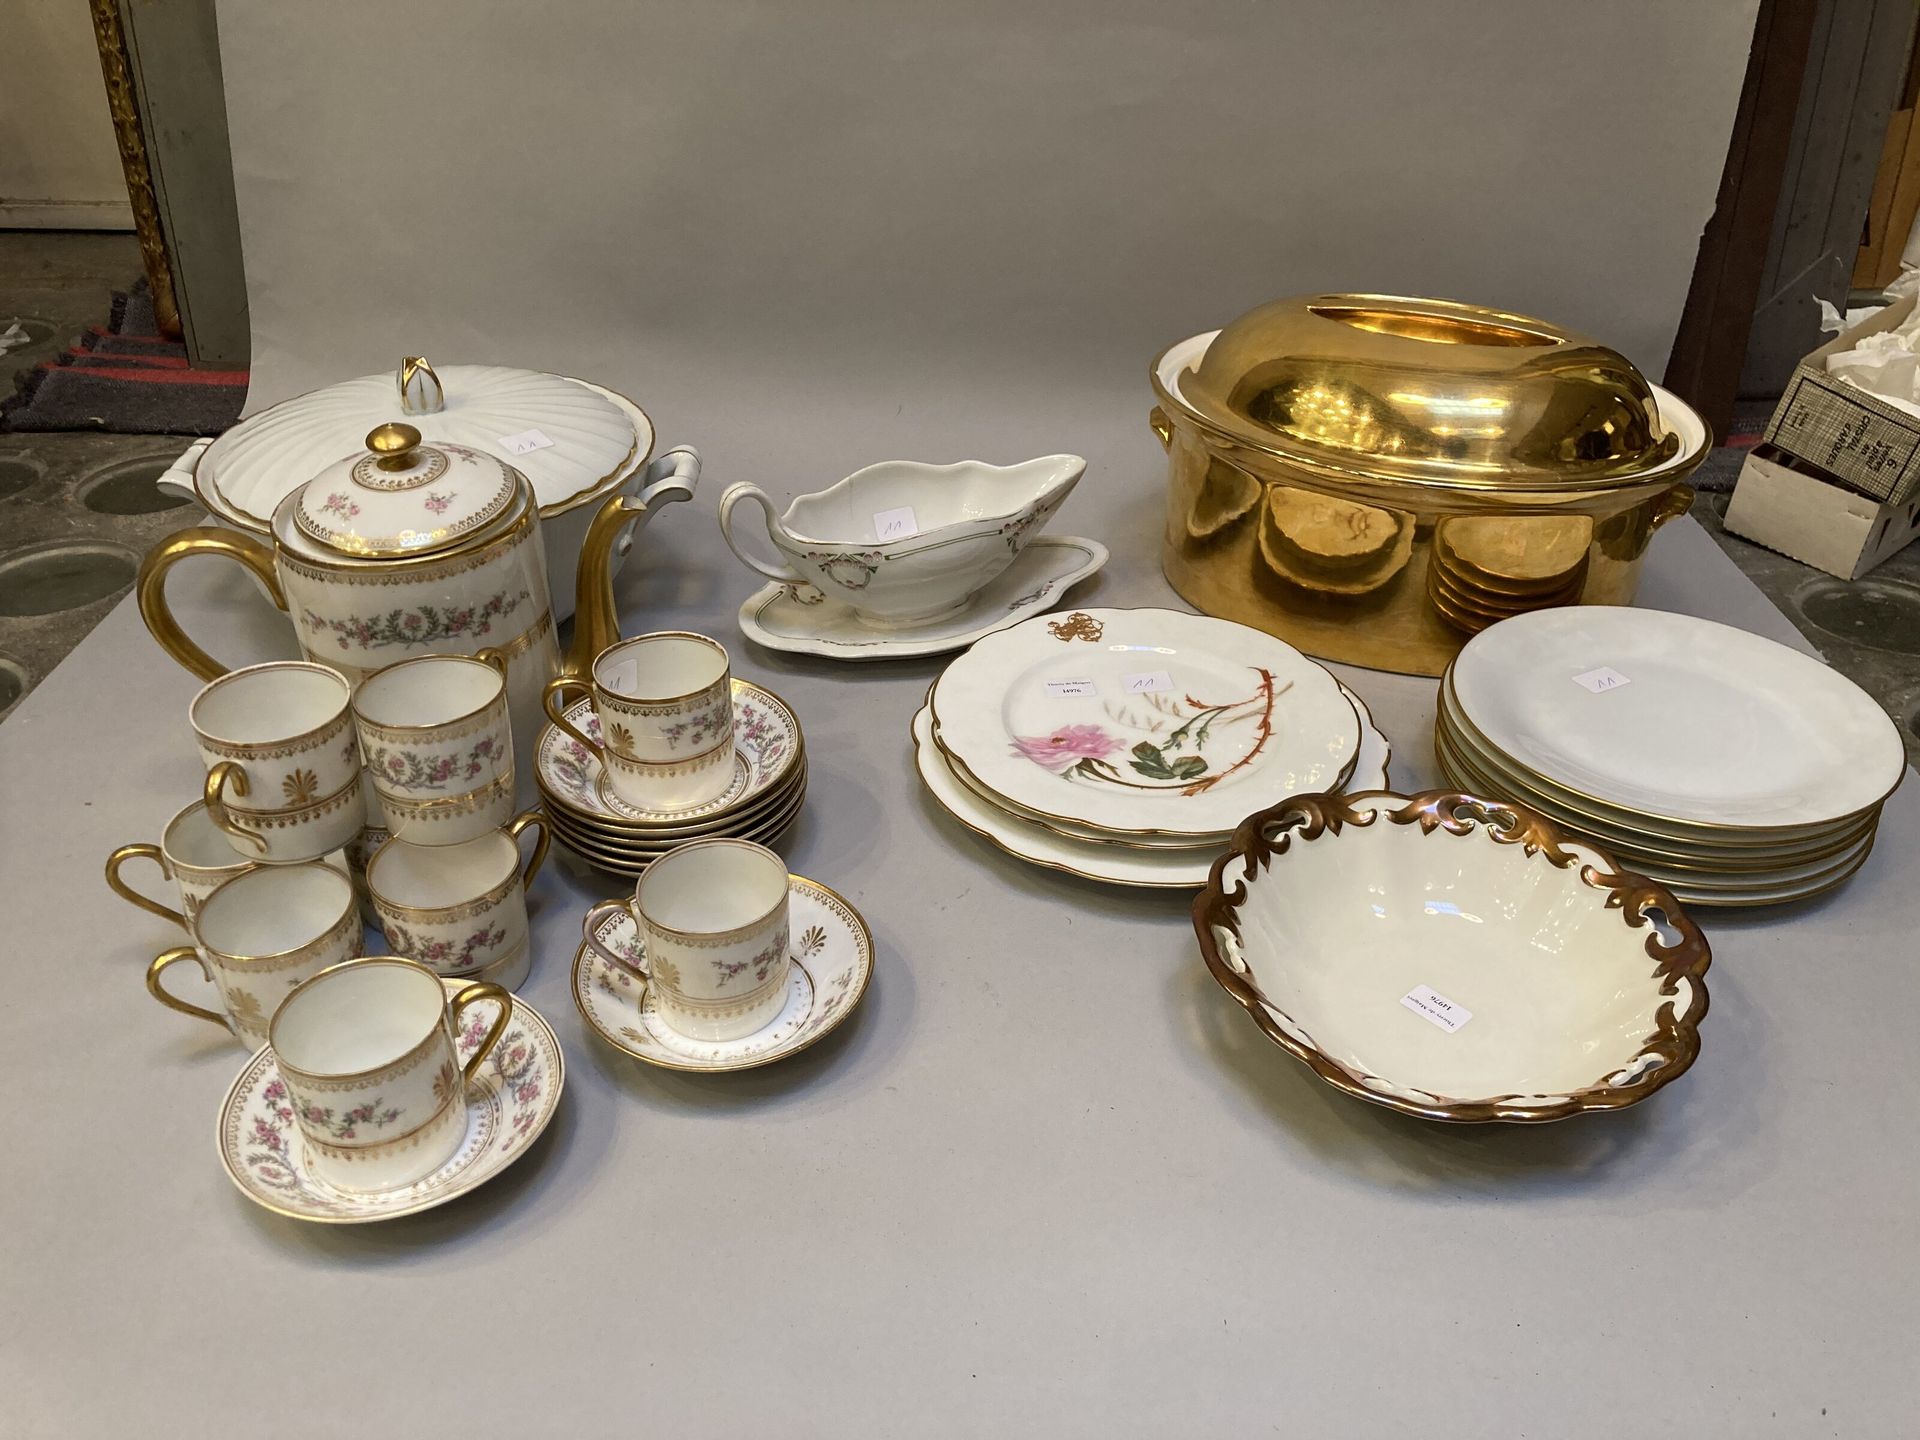 Null 套装包括粉红色和金色装饰的瓷器咖啡服务部分，茶壶盖子，8个杯子，8个碟子。

白色盘子里有金鱼片、碗、金梗，盘子上有一字花纹装饰，酱船和汤盘都是附赠的&hellip;